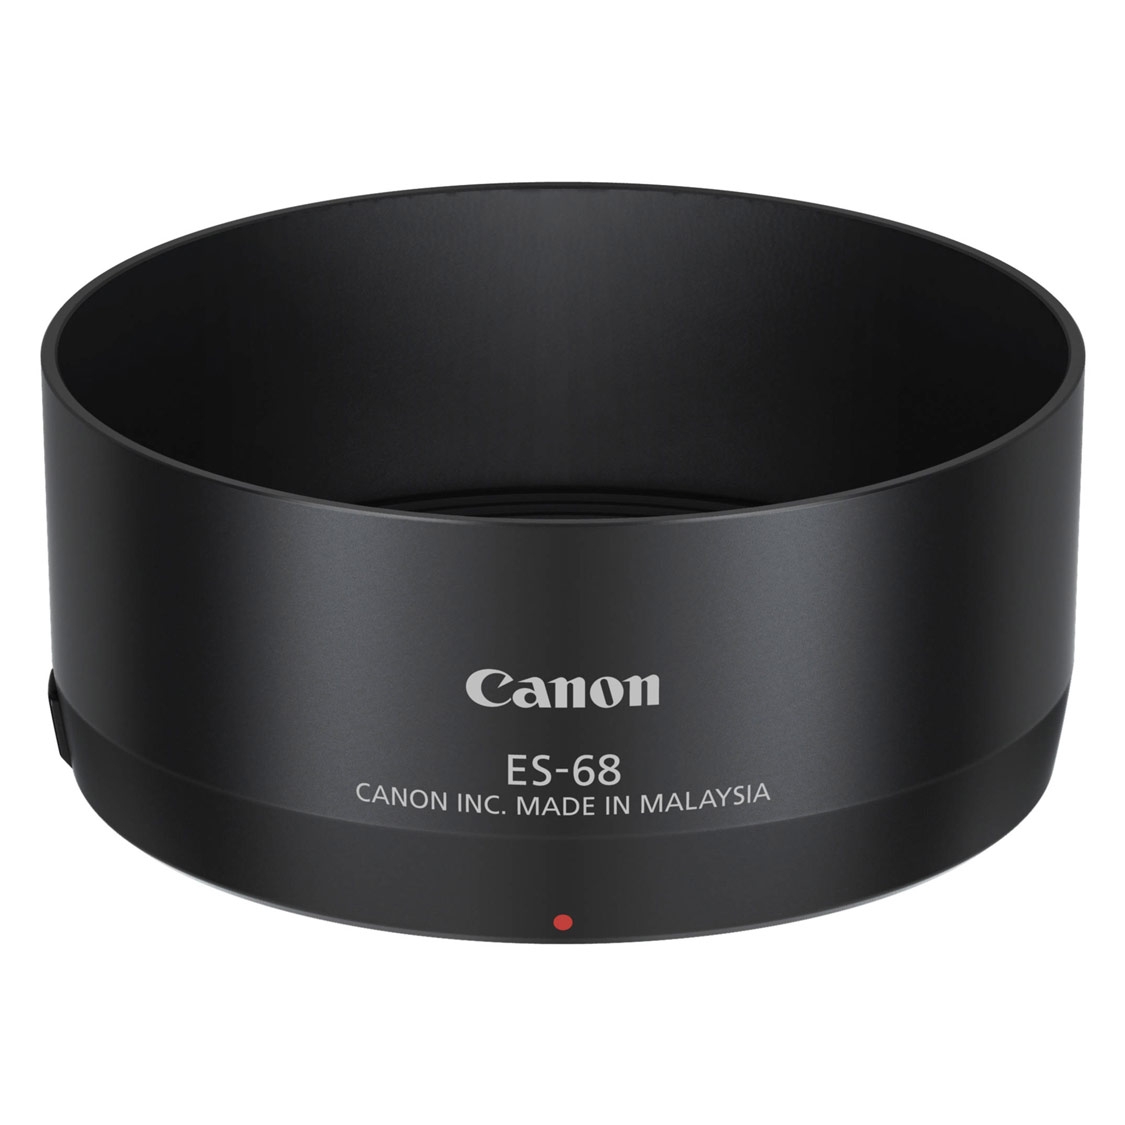 Canon ES-68 Lens Hood for 50mm F1.8 STM Lens